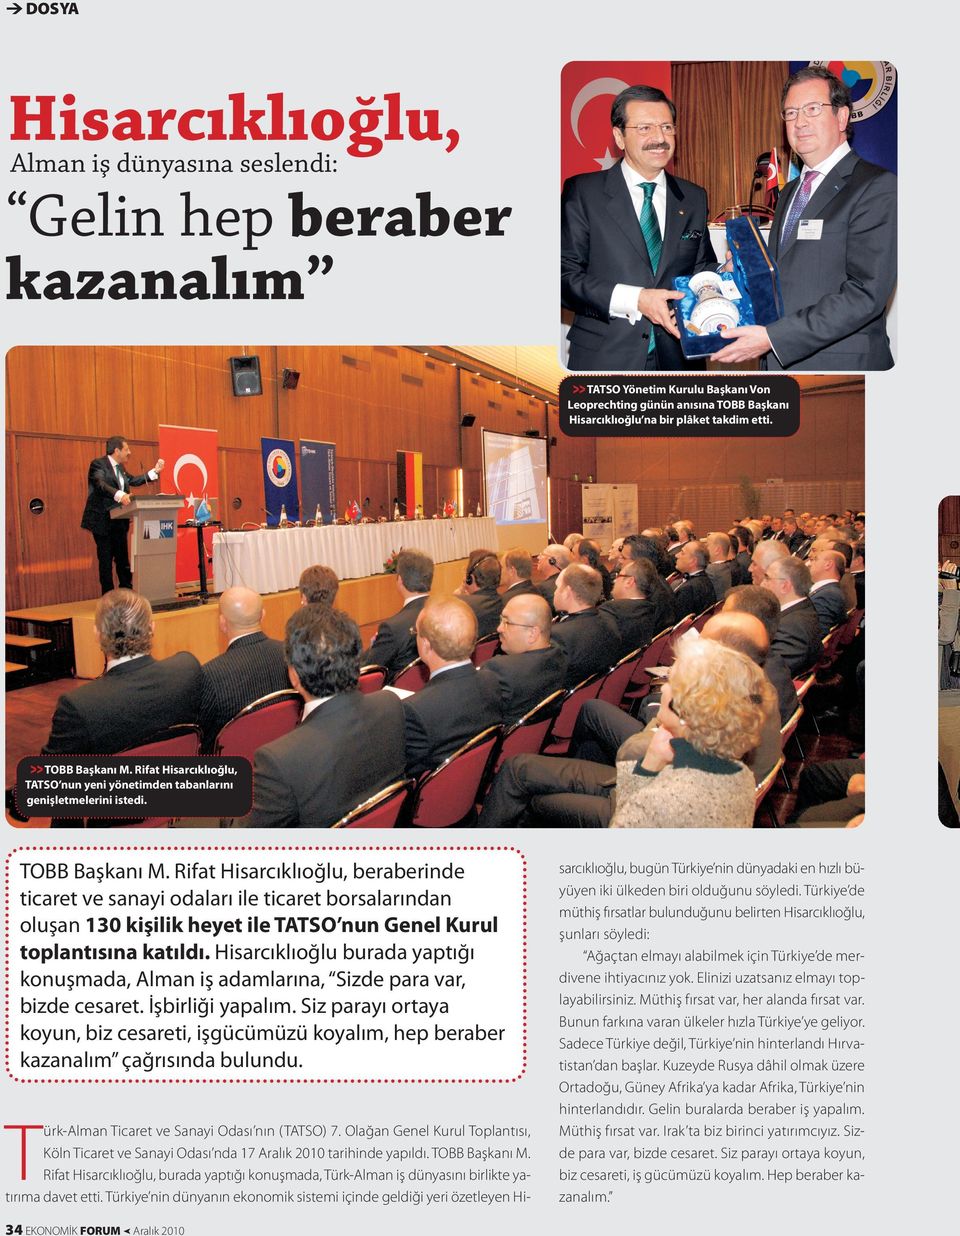 Rifat Hisarcıklıoğlu, beraberinde ticaret ve sanayi odaları ile ticaret borsalarından oluşan 130 kişilik heyet ile ASO nun Genel Kurul toplantısına katıldı.